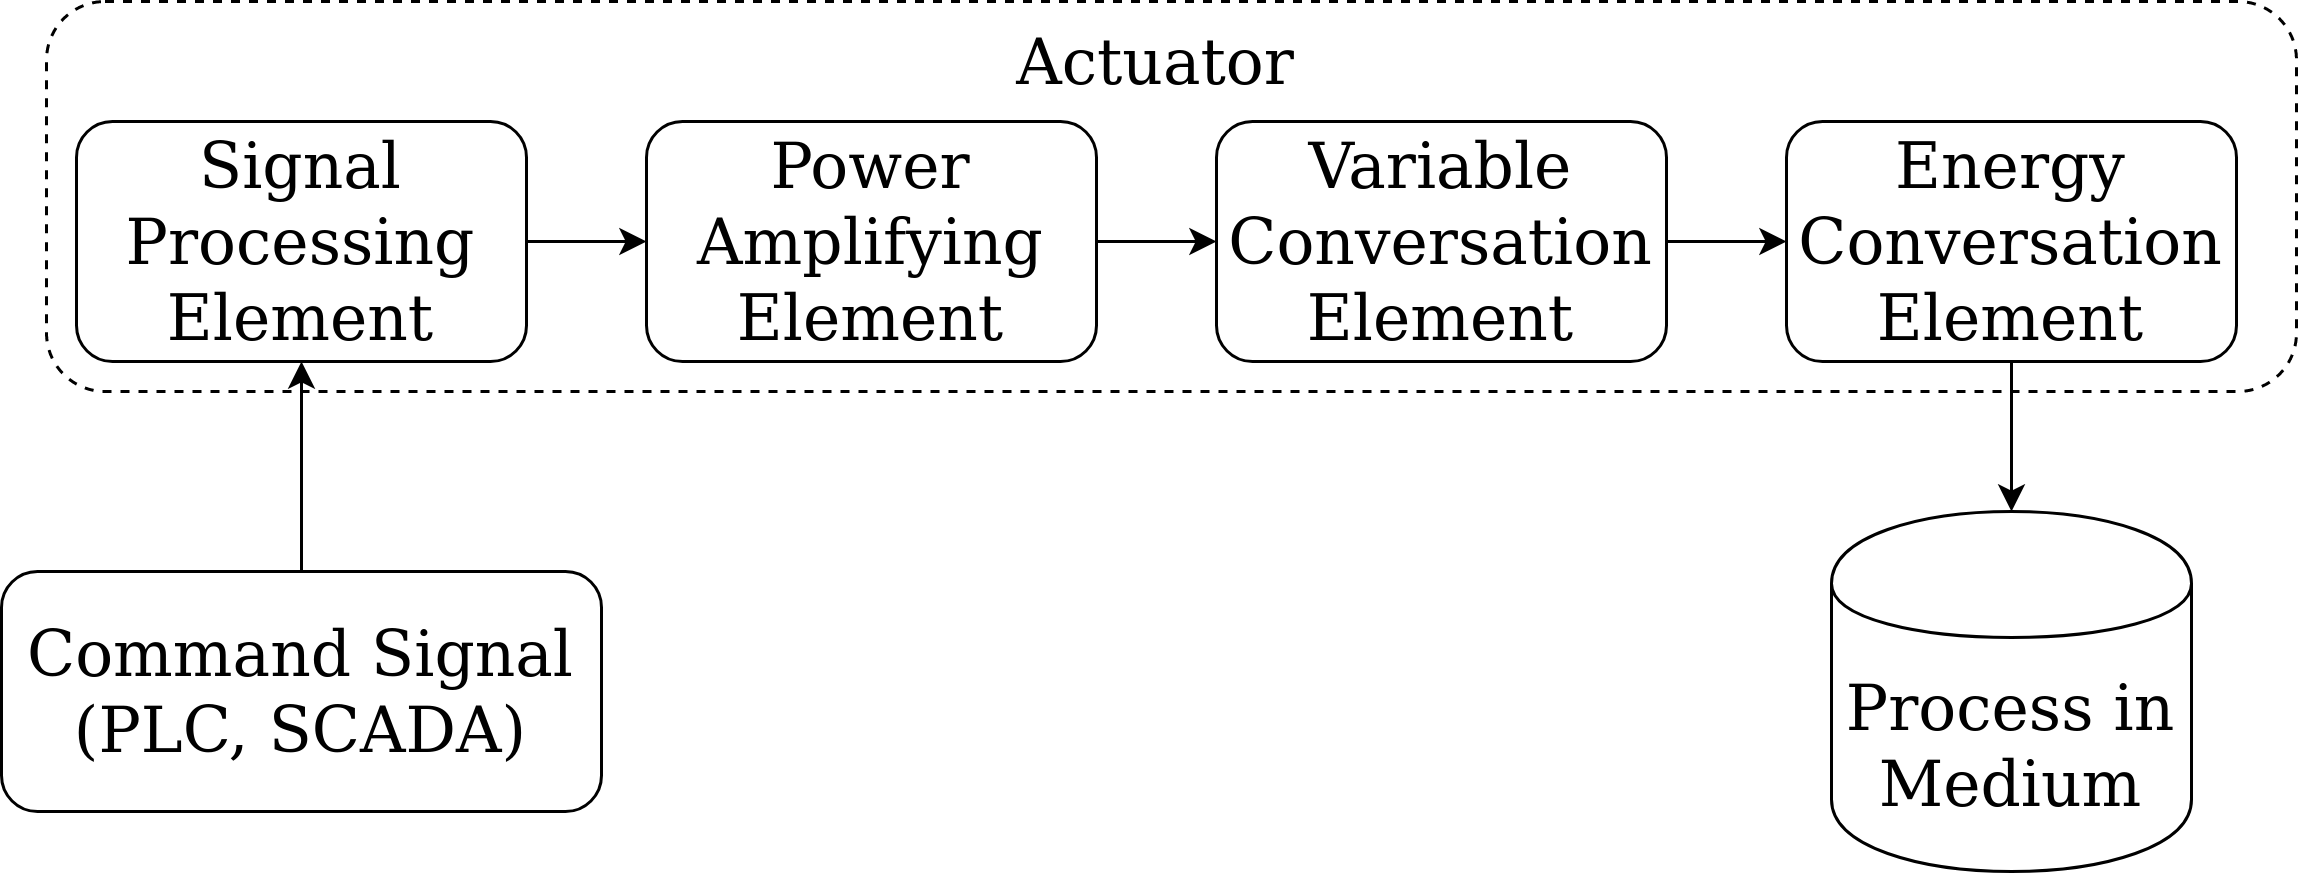 actuator system (level 0)